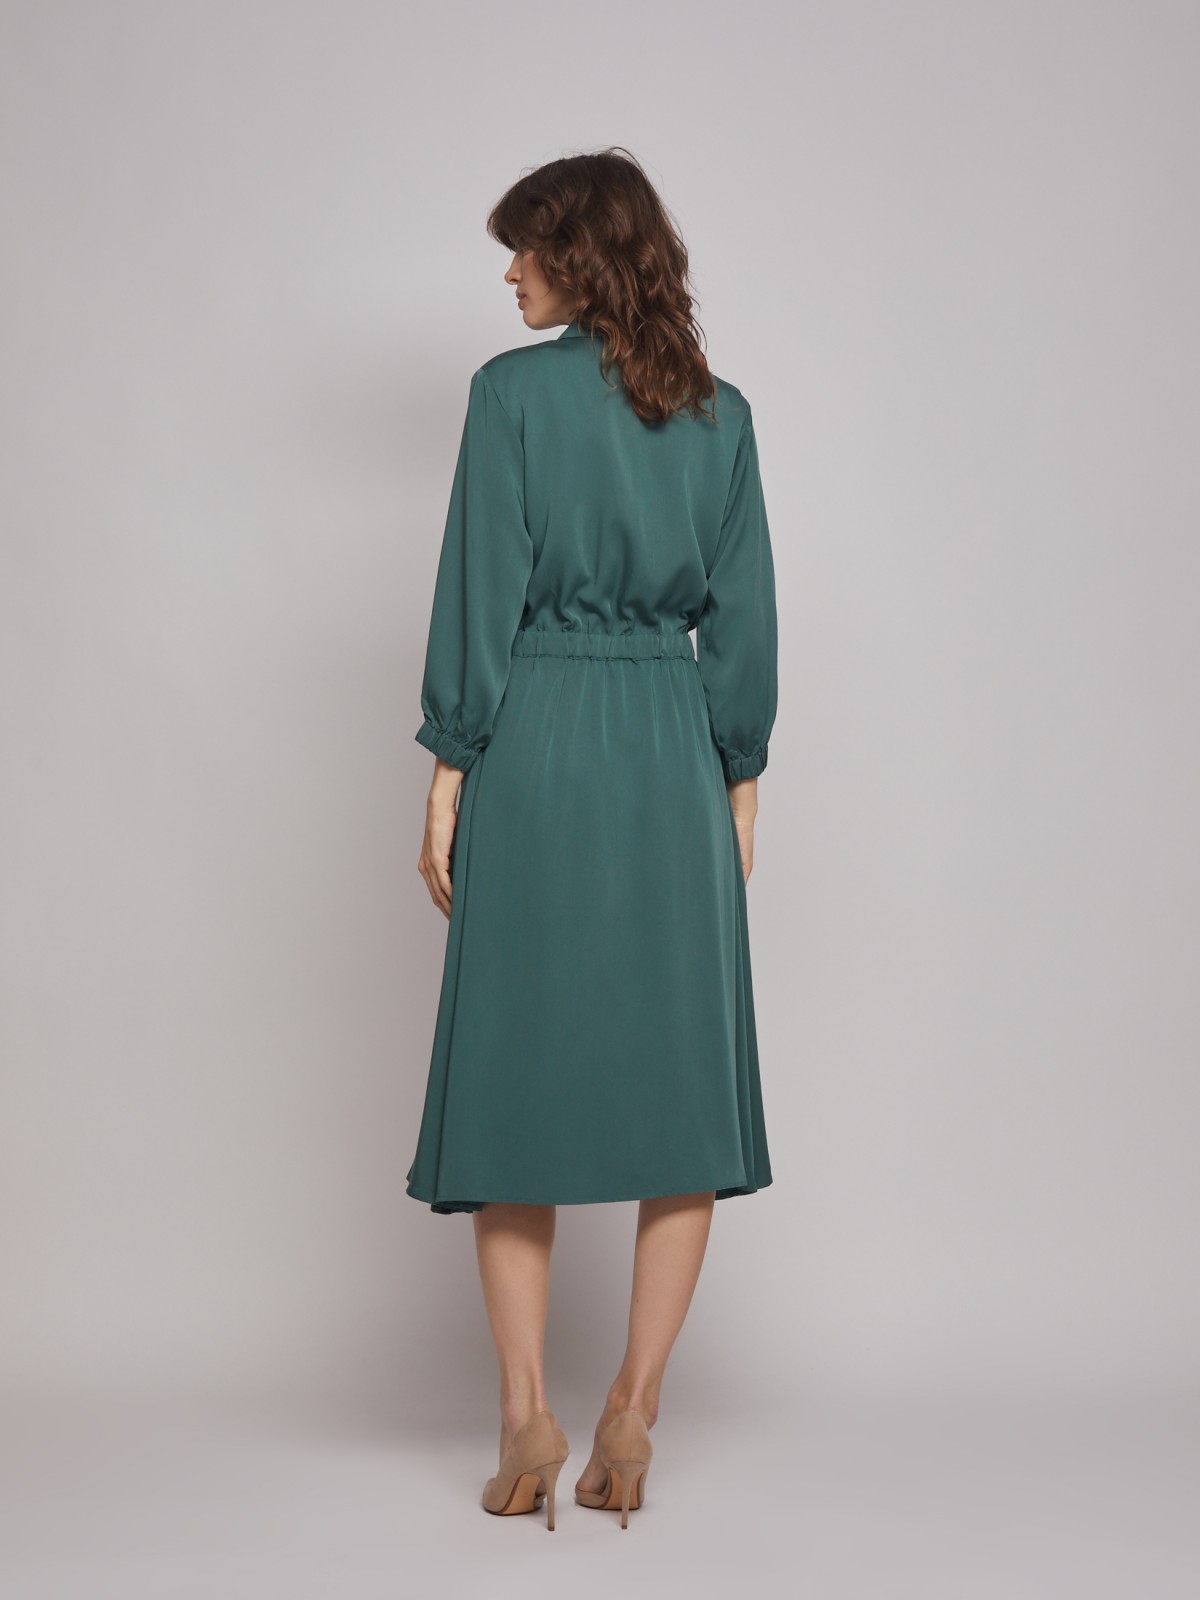 Платье-рубашка на кулиске zolla 222328239031, цвет темно-зеленый, размер S - фото 6